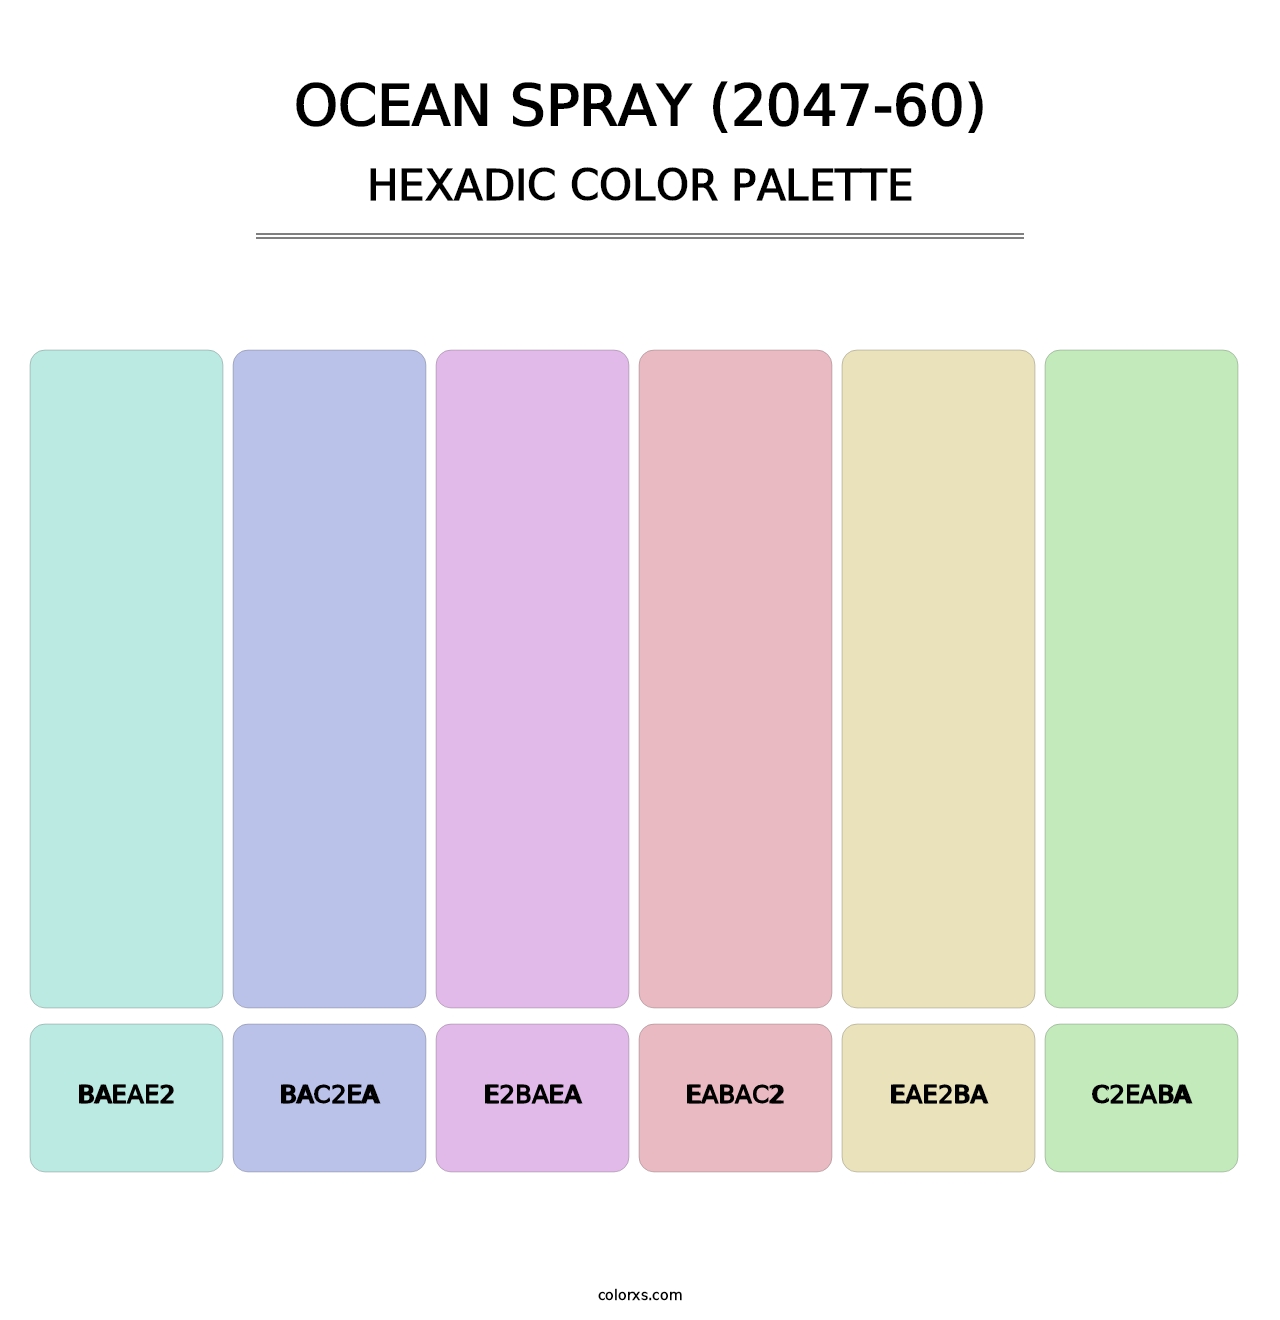 Ocean Spray (2047-60) - Hexadic Color Palette